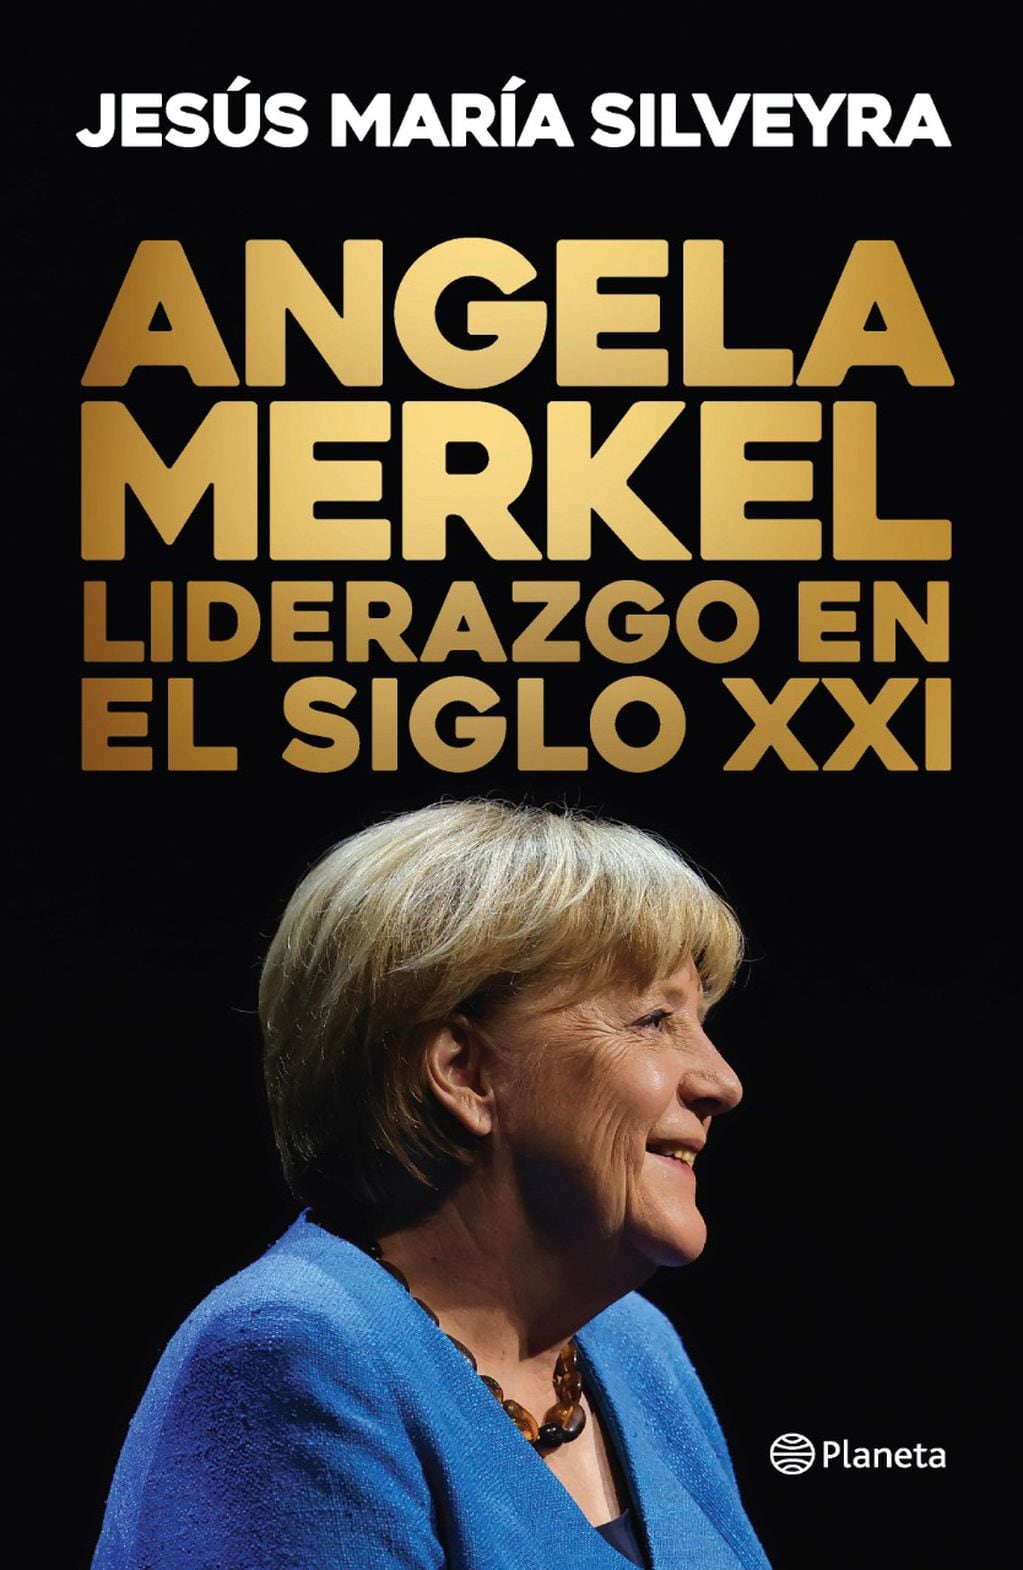 El nuevo libro sobre Angela Merkel